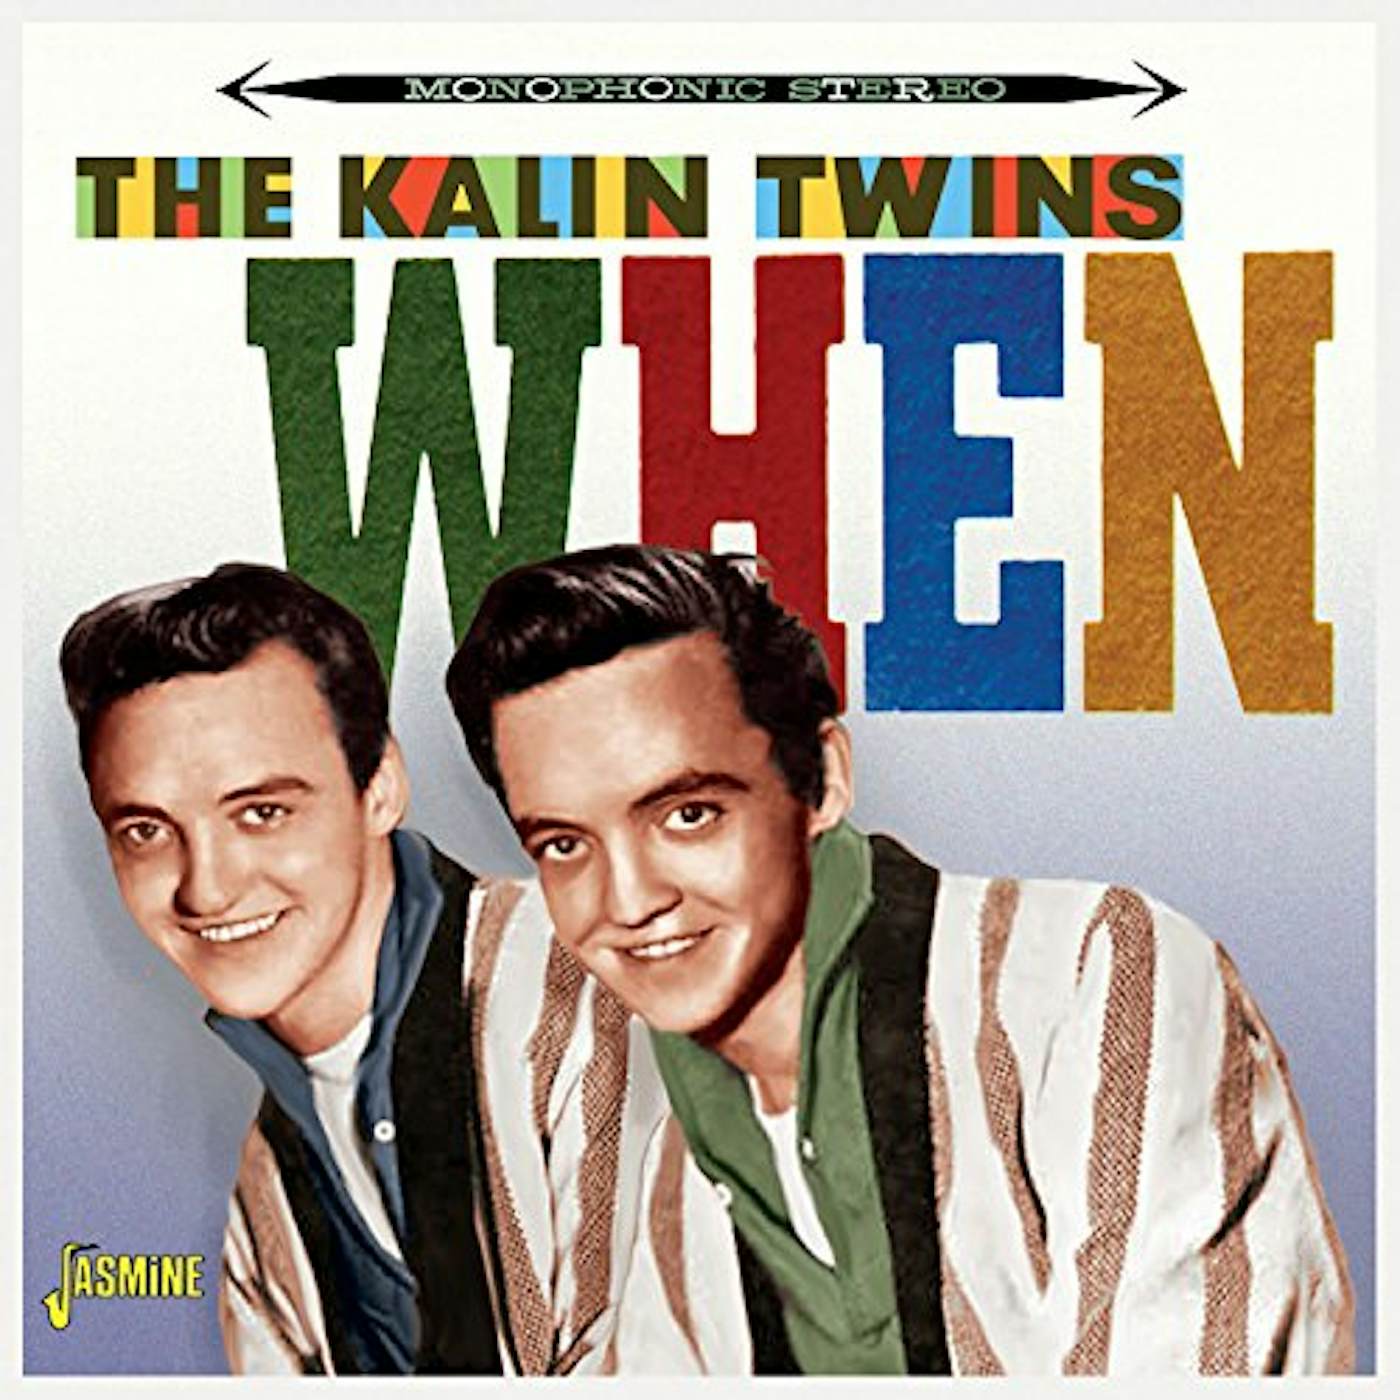 Kalin Twins WHEN CD